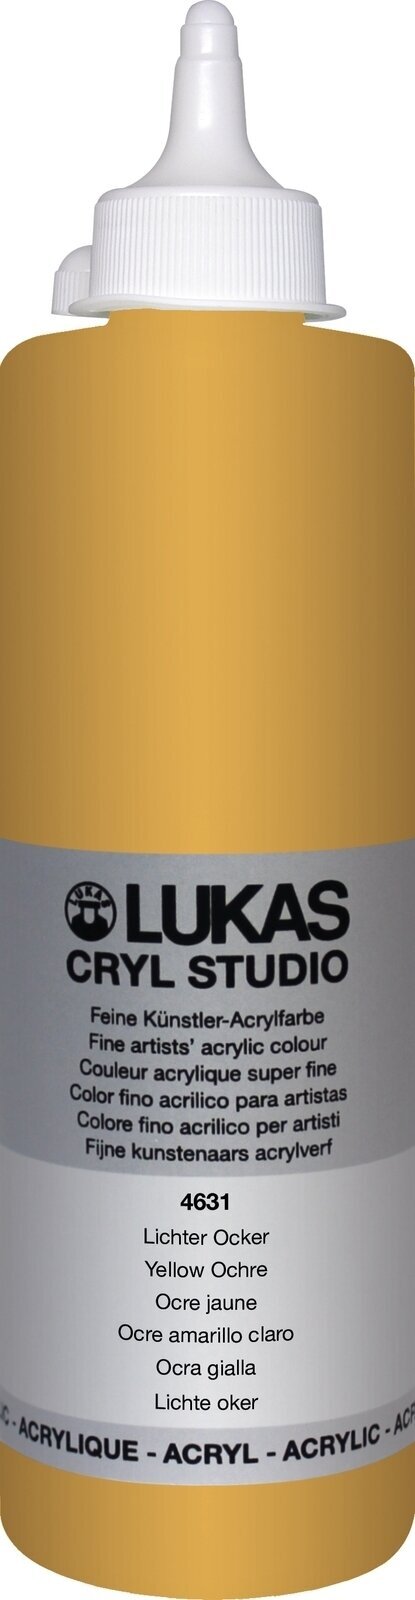 Akrylmaling Lukas Cryl Studio Akrylmaling 500 ml Yellow Ochre